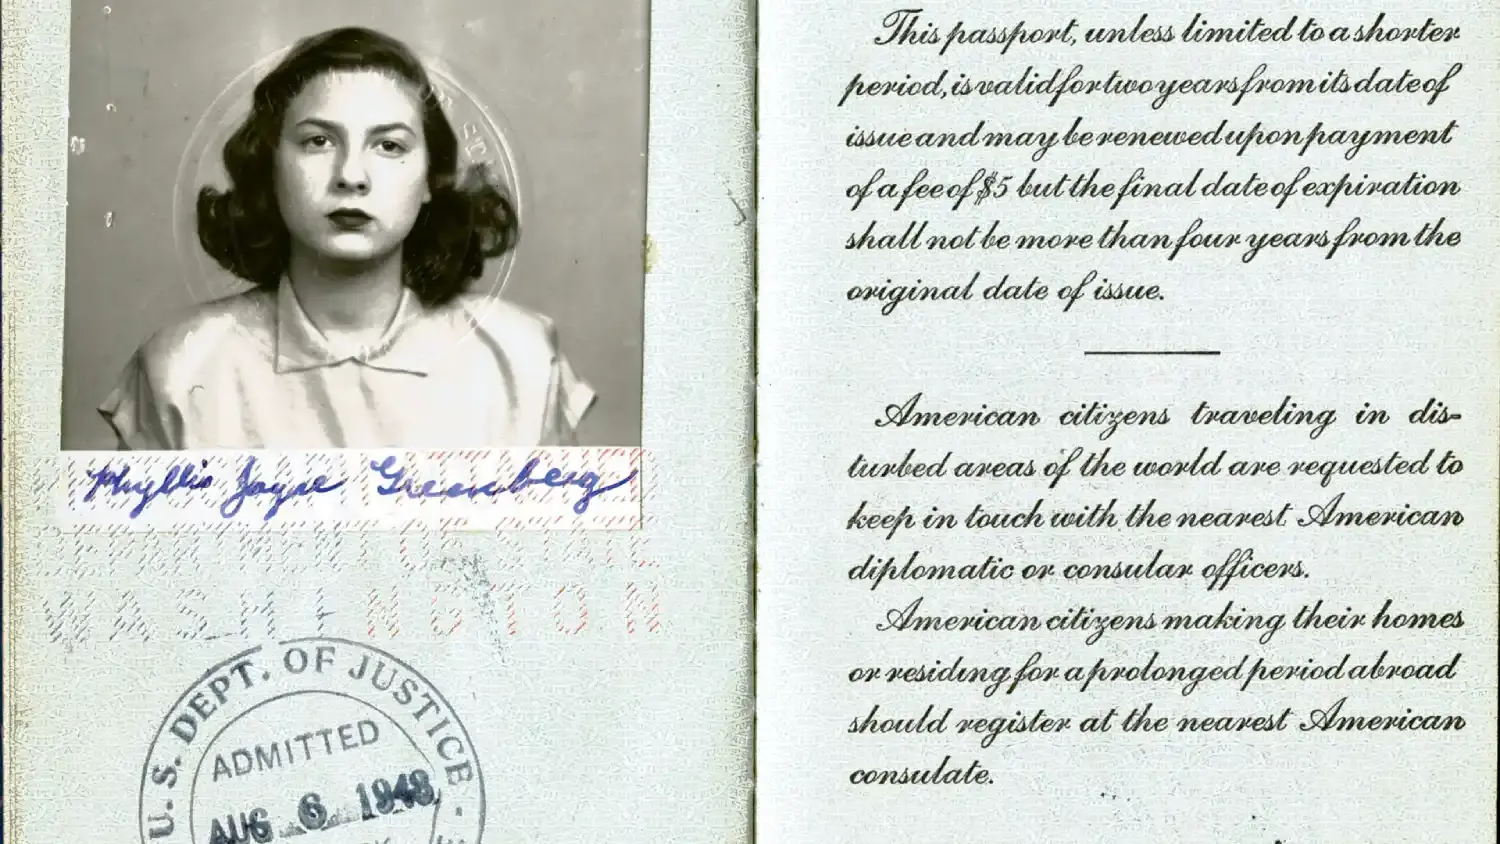 European field trip passport courtesy of Phyllis J Weiner in 1948.